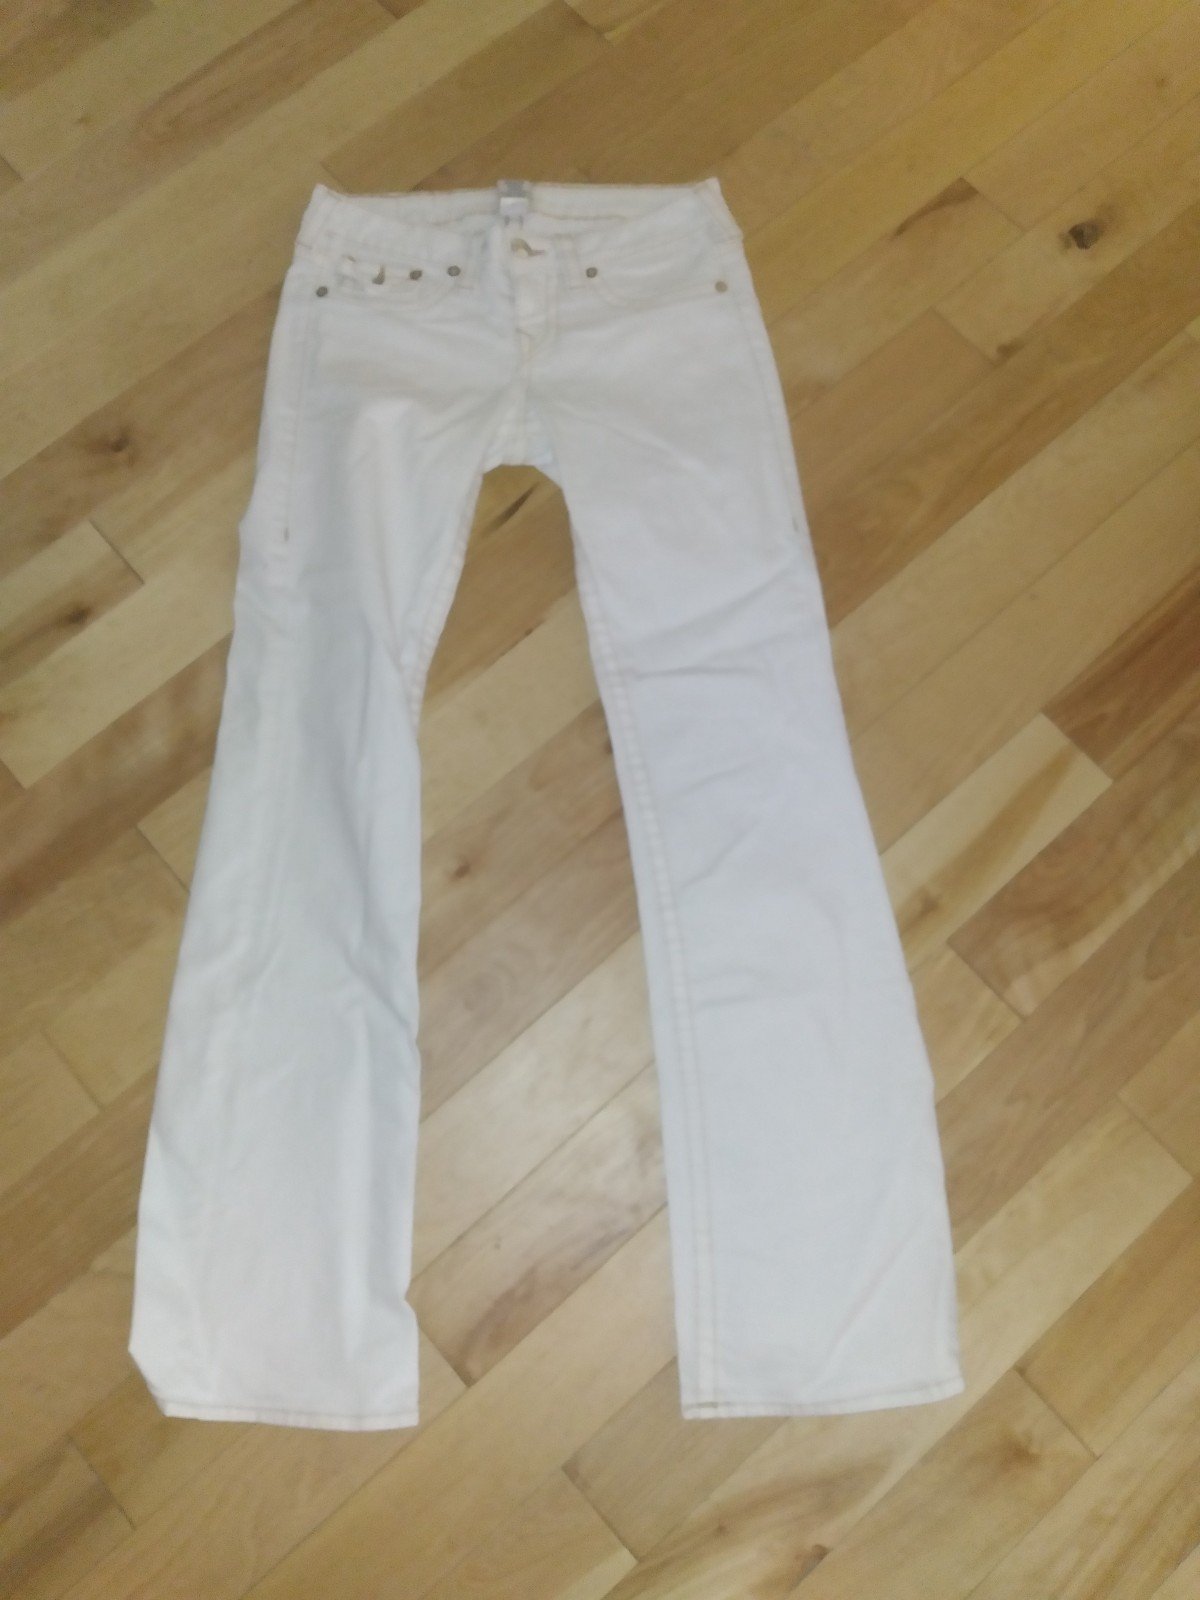 Latest  jeans Lq6HCVECY US Sale